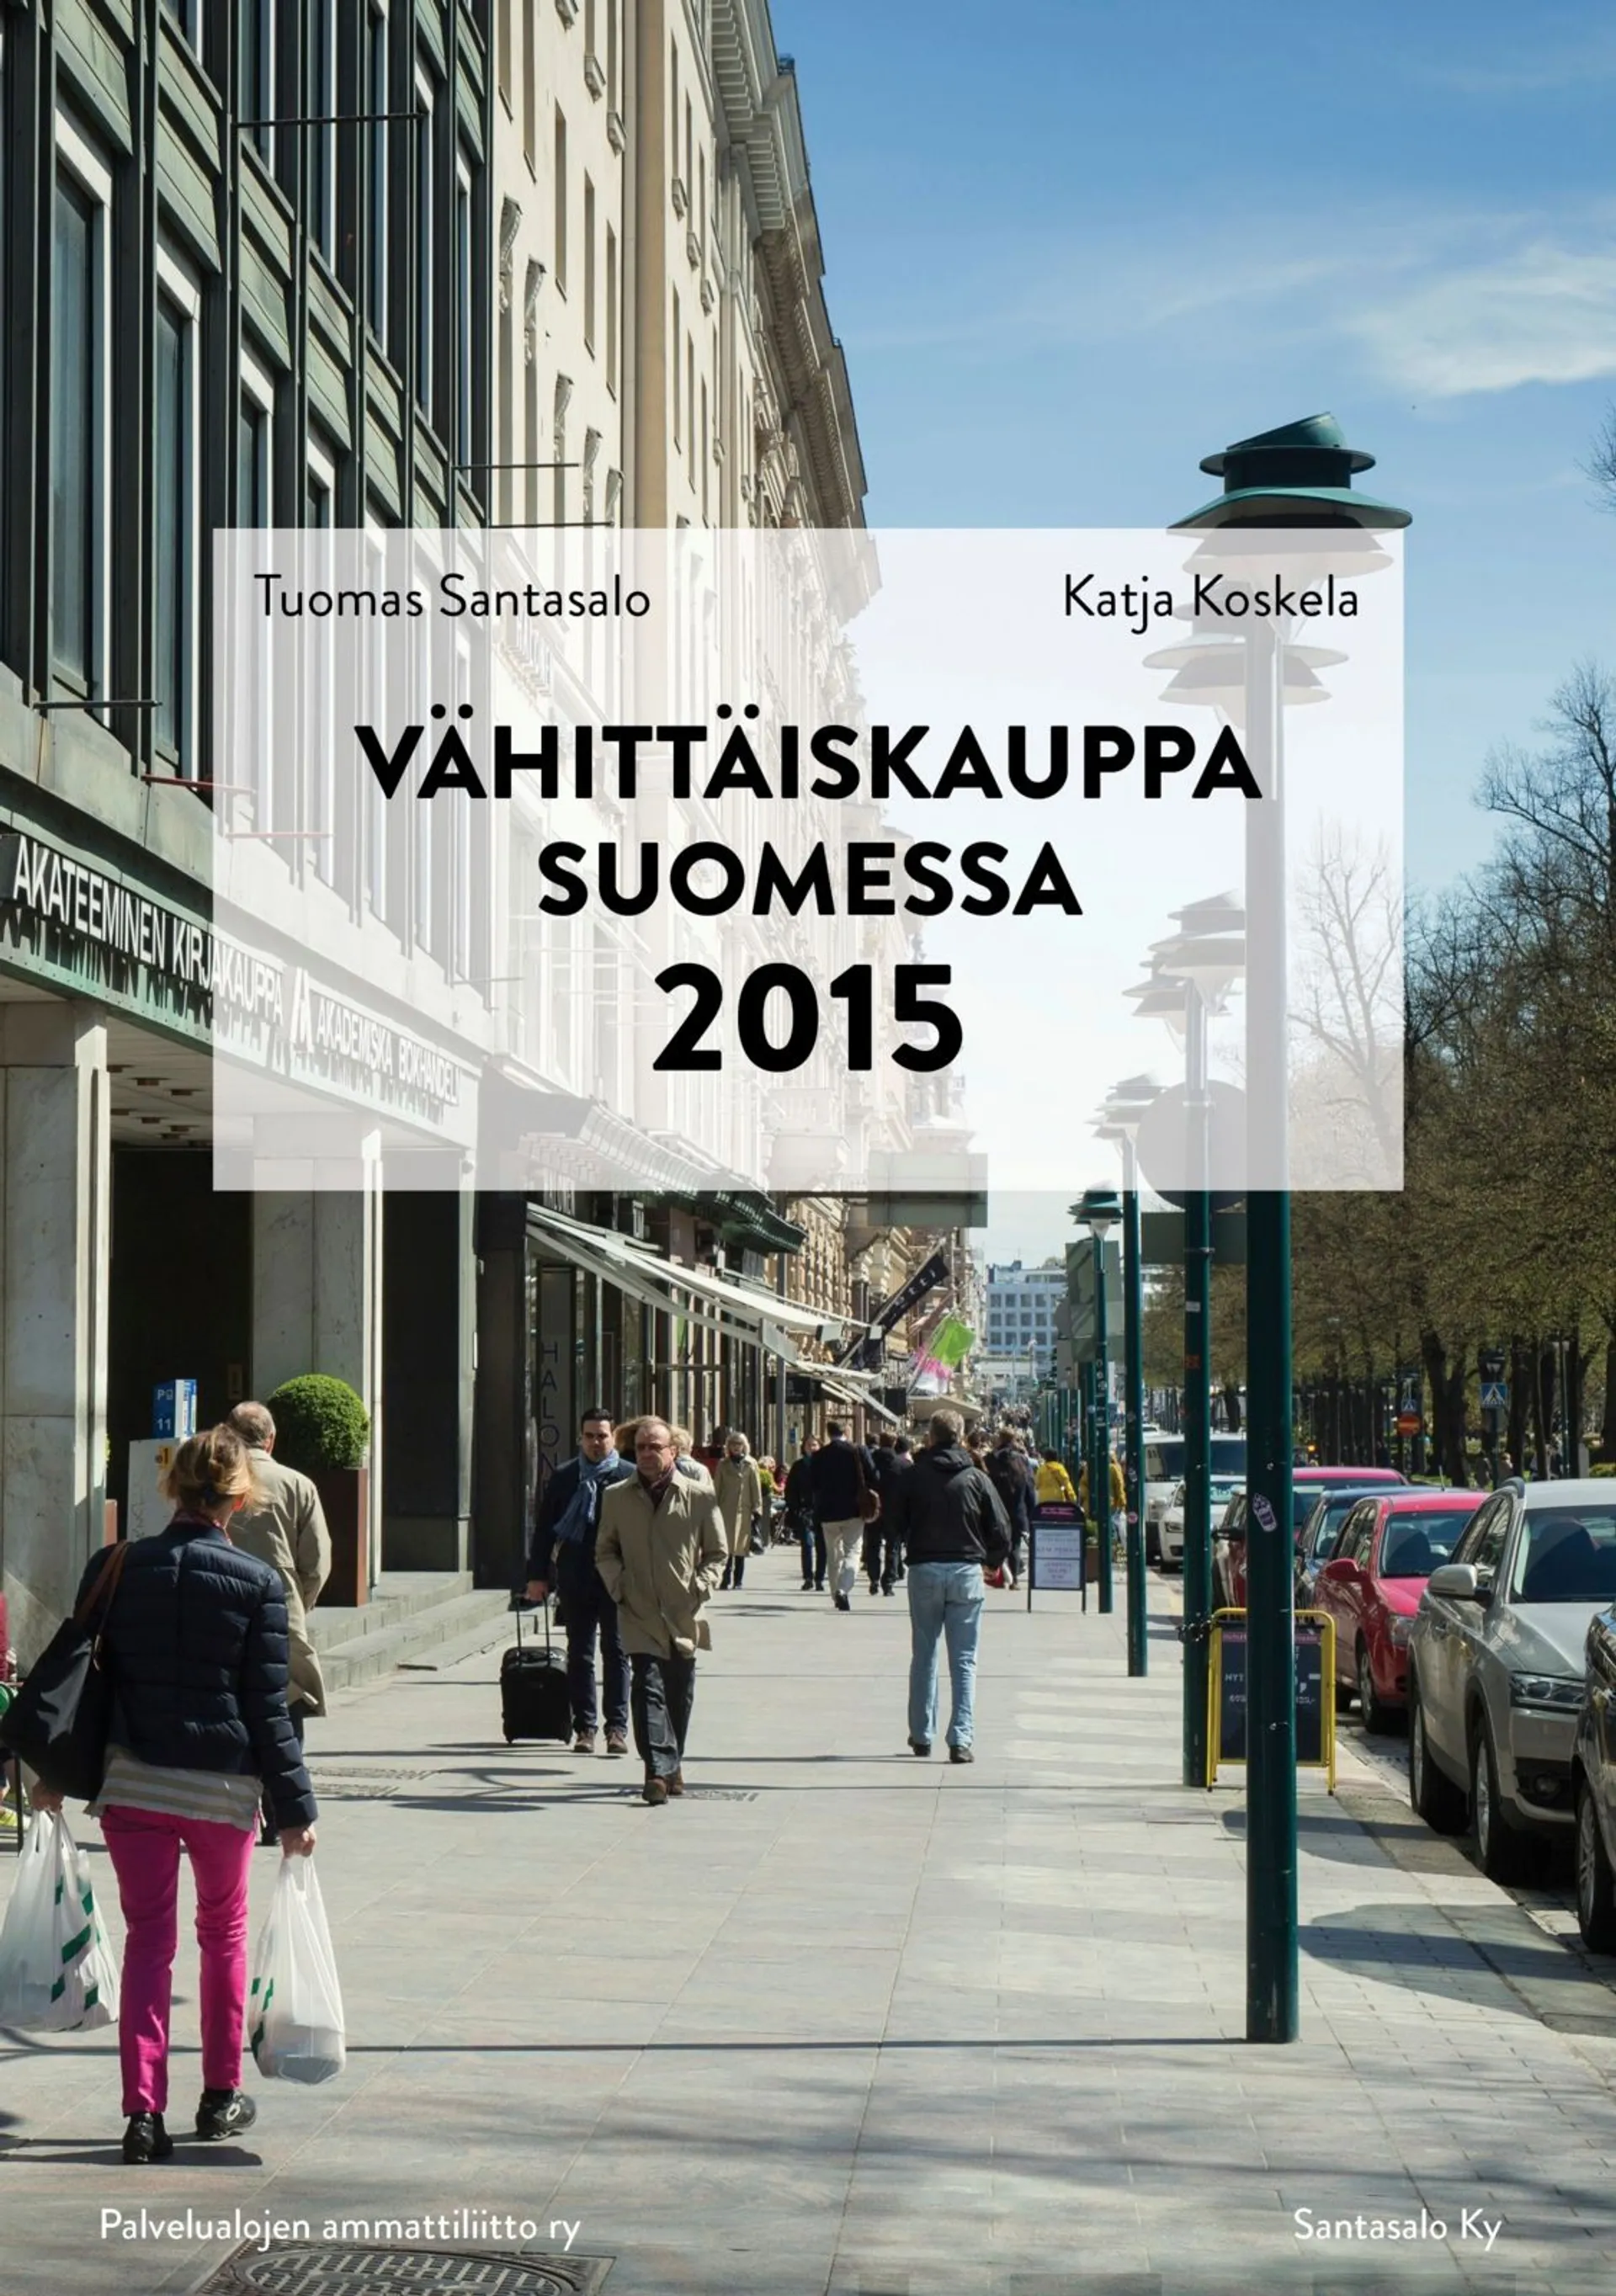 Santasalo, Vähittäiskauppa Suomessa 2015